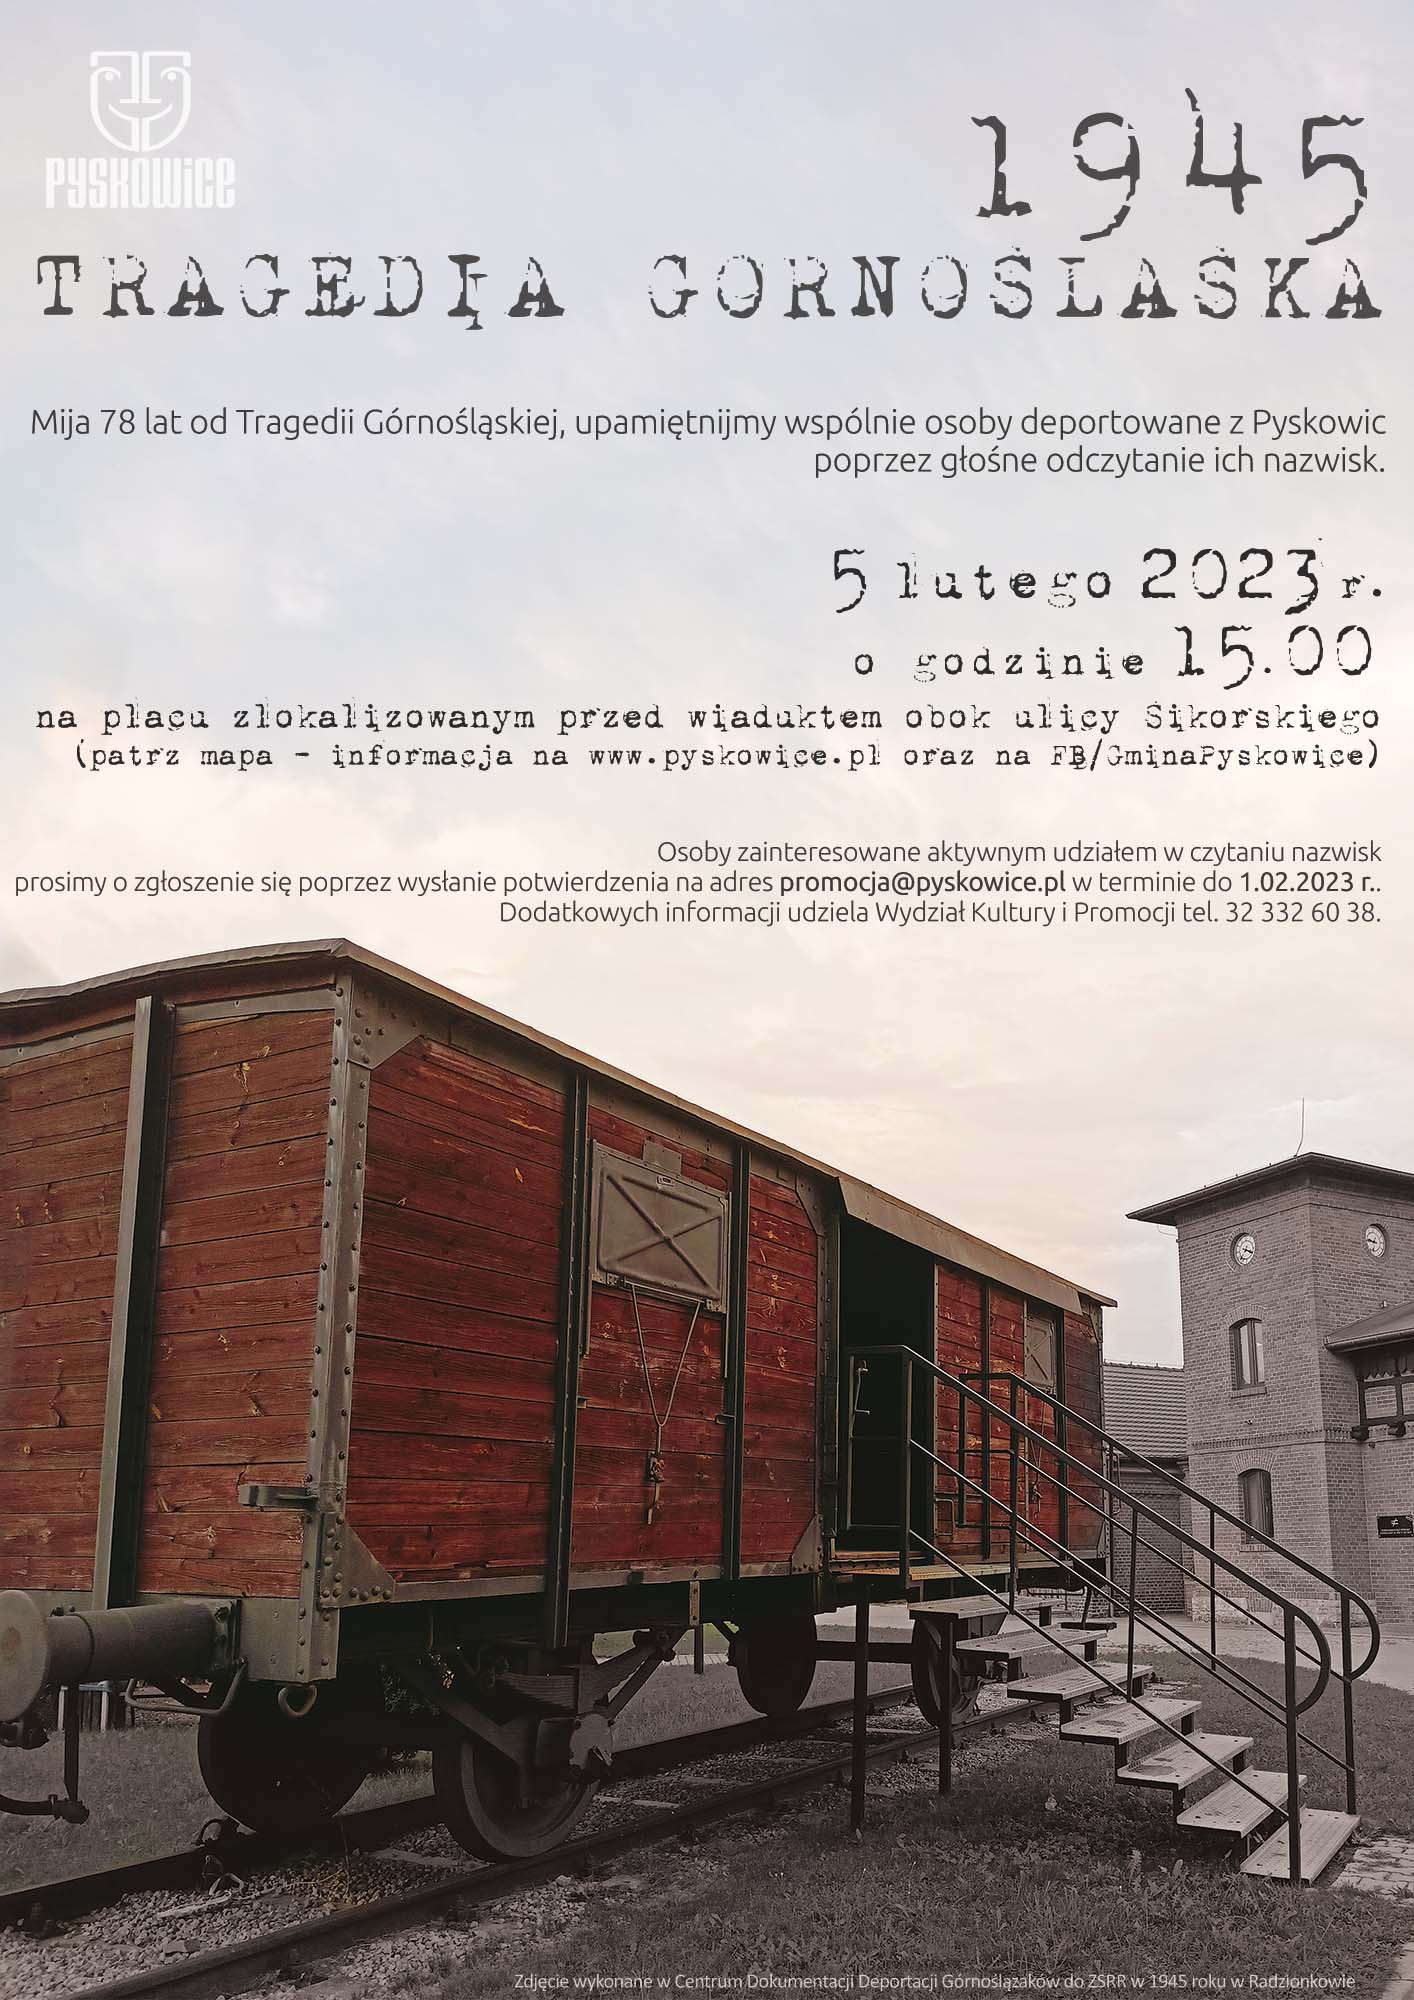 Grafika: wykorzystano zdjęcie wykonane w Centrum Dokumentacji Deportacji Górnoślązaków do ZSRR w 1945 roku w Radzionkowie; treść na plakacie zgodna z zamieszczoną informacją